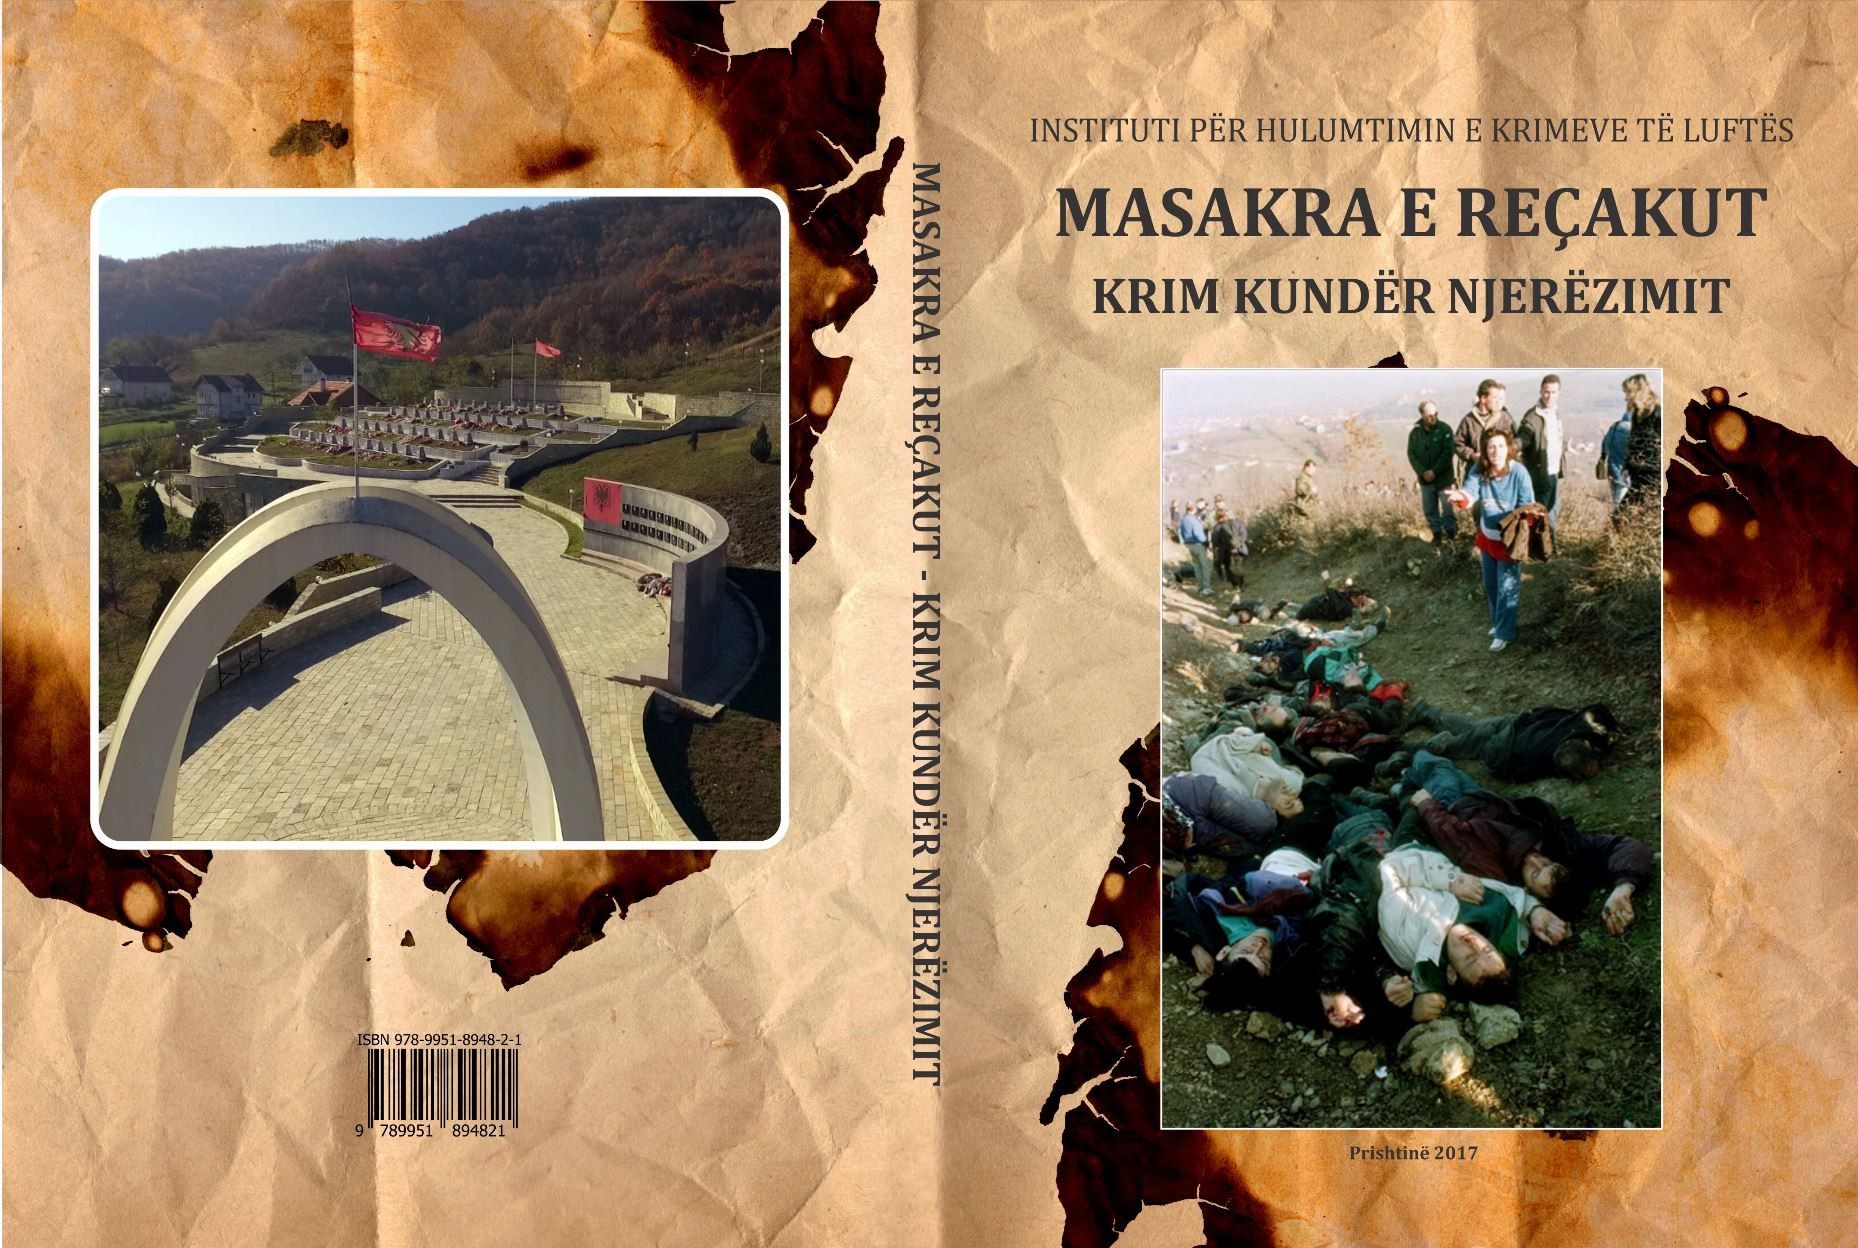 Promovohet monografia “Masakra e Reçakut - Krim kundër Njerëzimit”